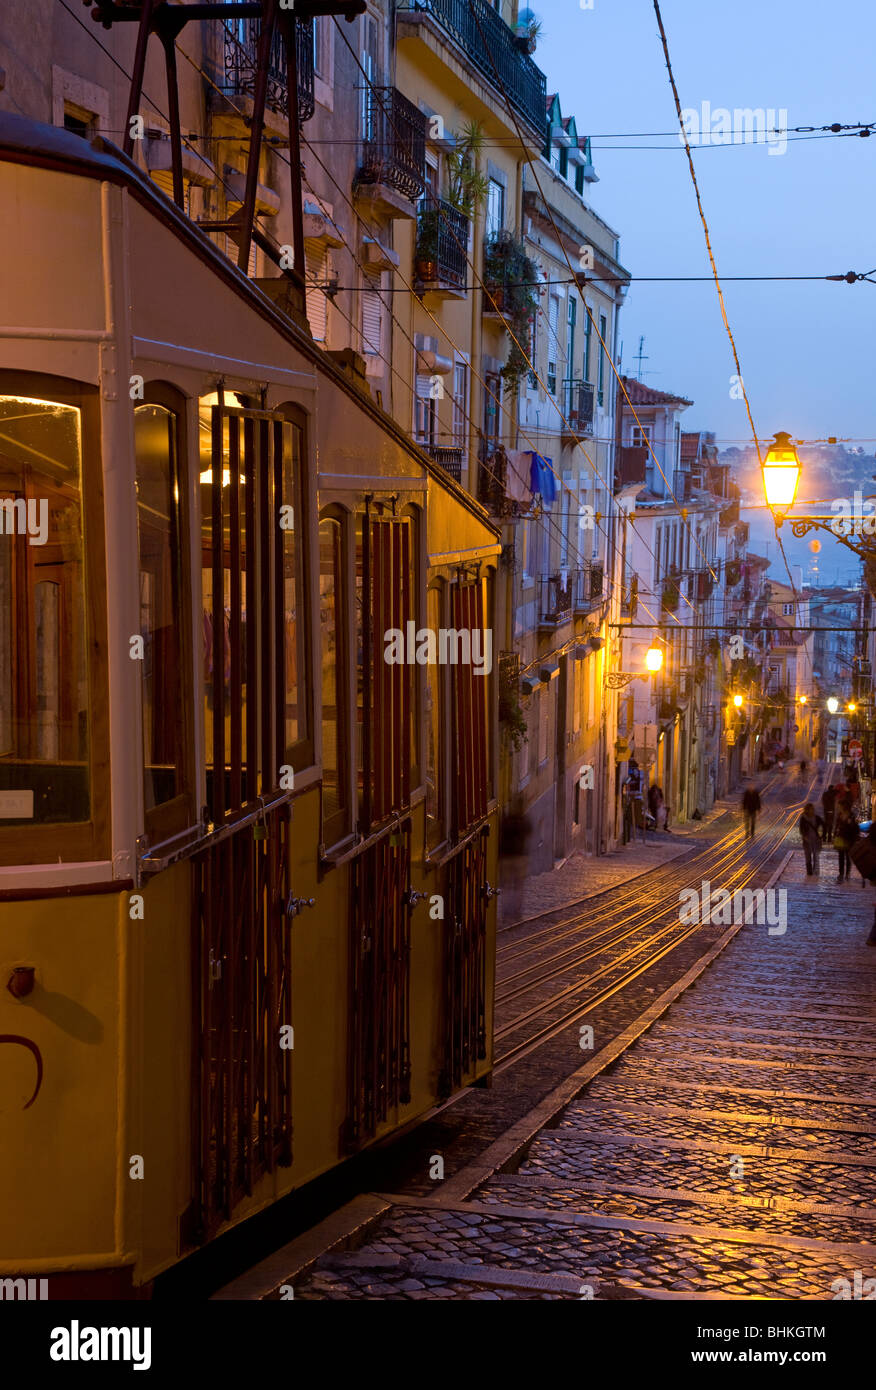 Portugal Lisbonne tramway funiculaire allumé au crépuscule dans le district de Catarina Banque D'Images